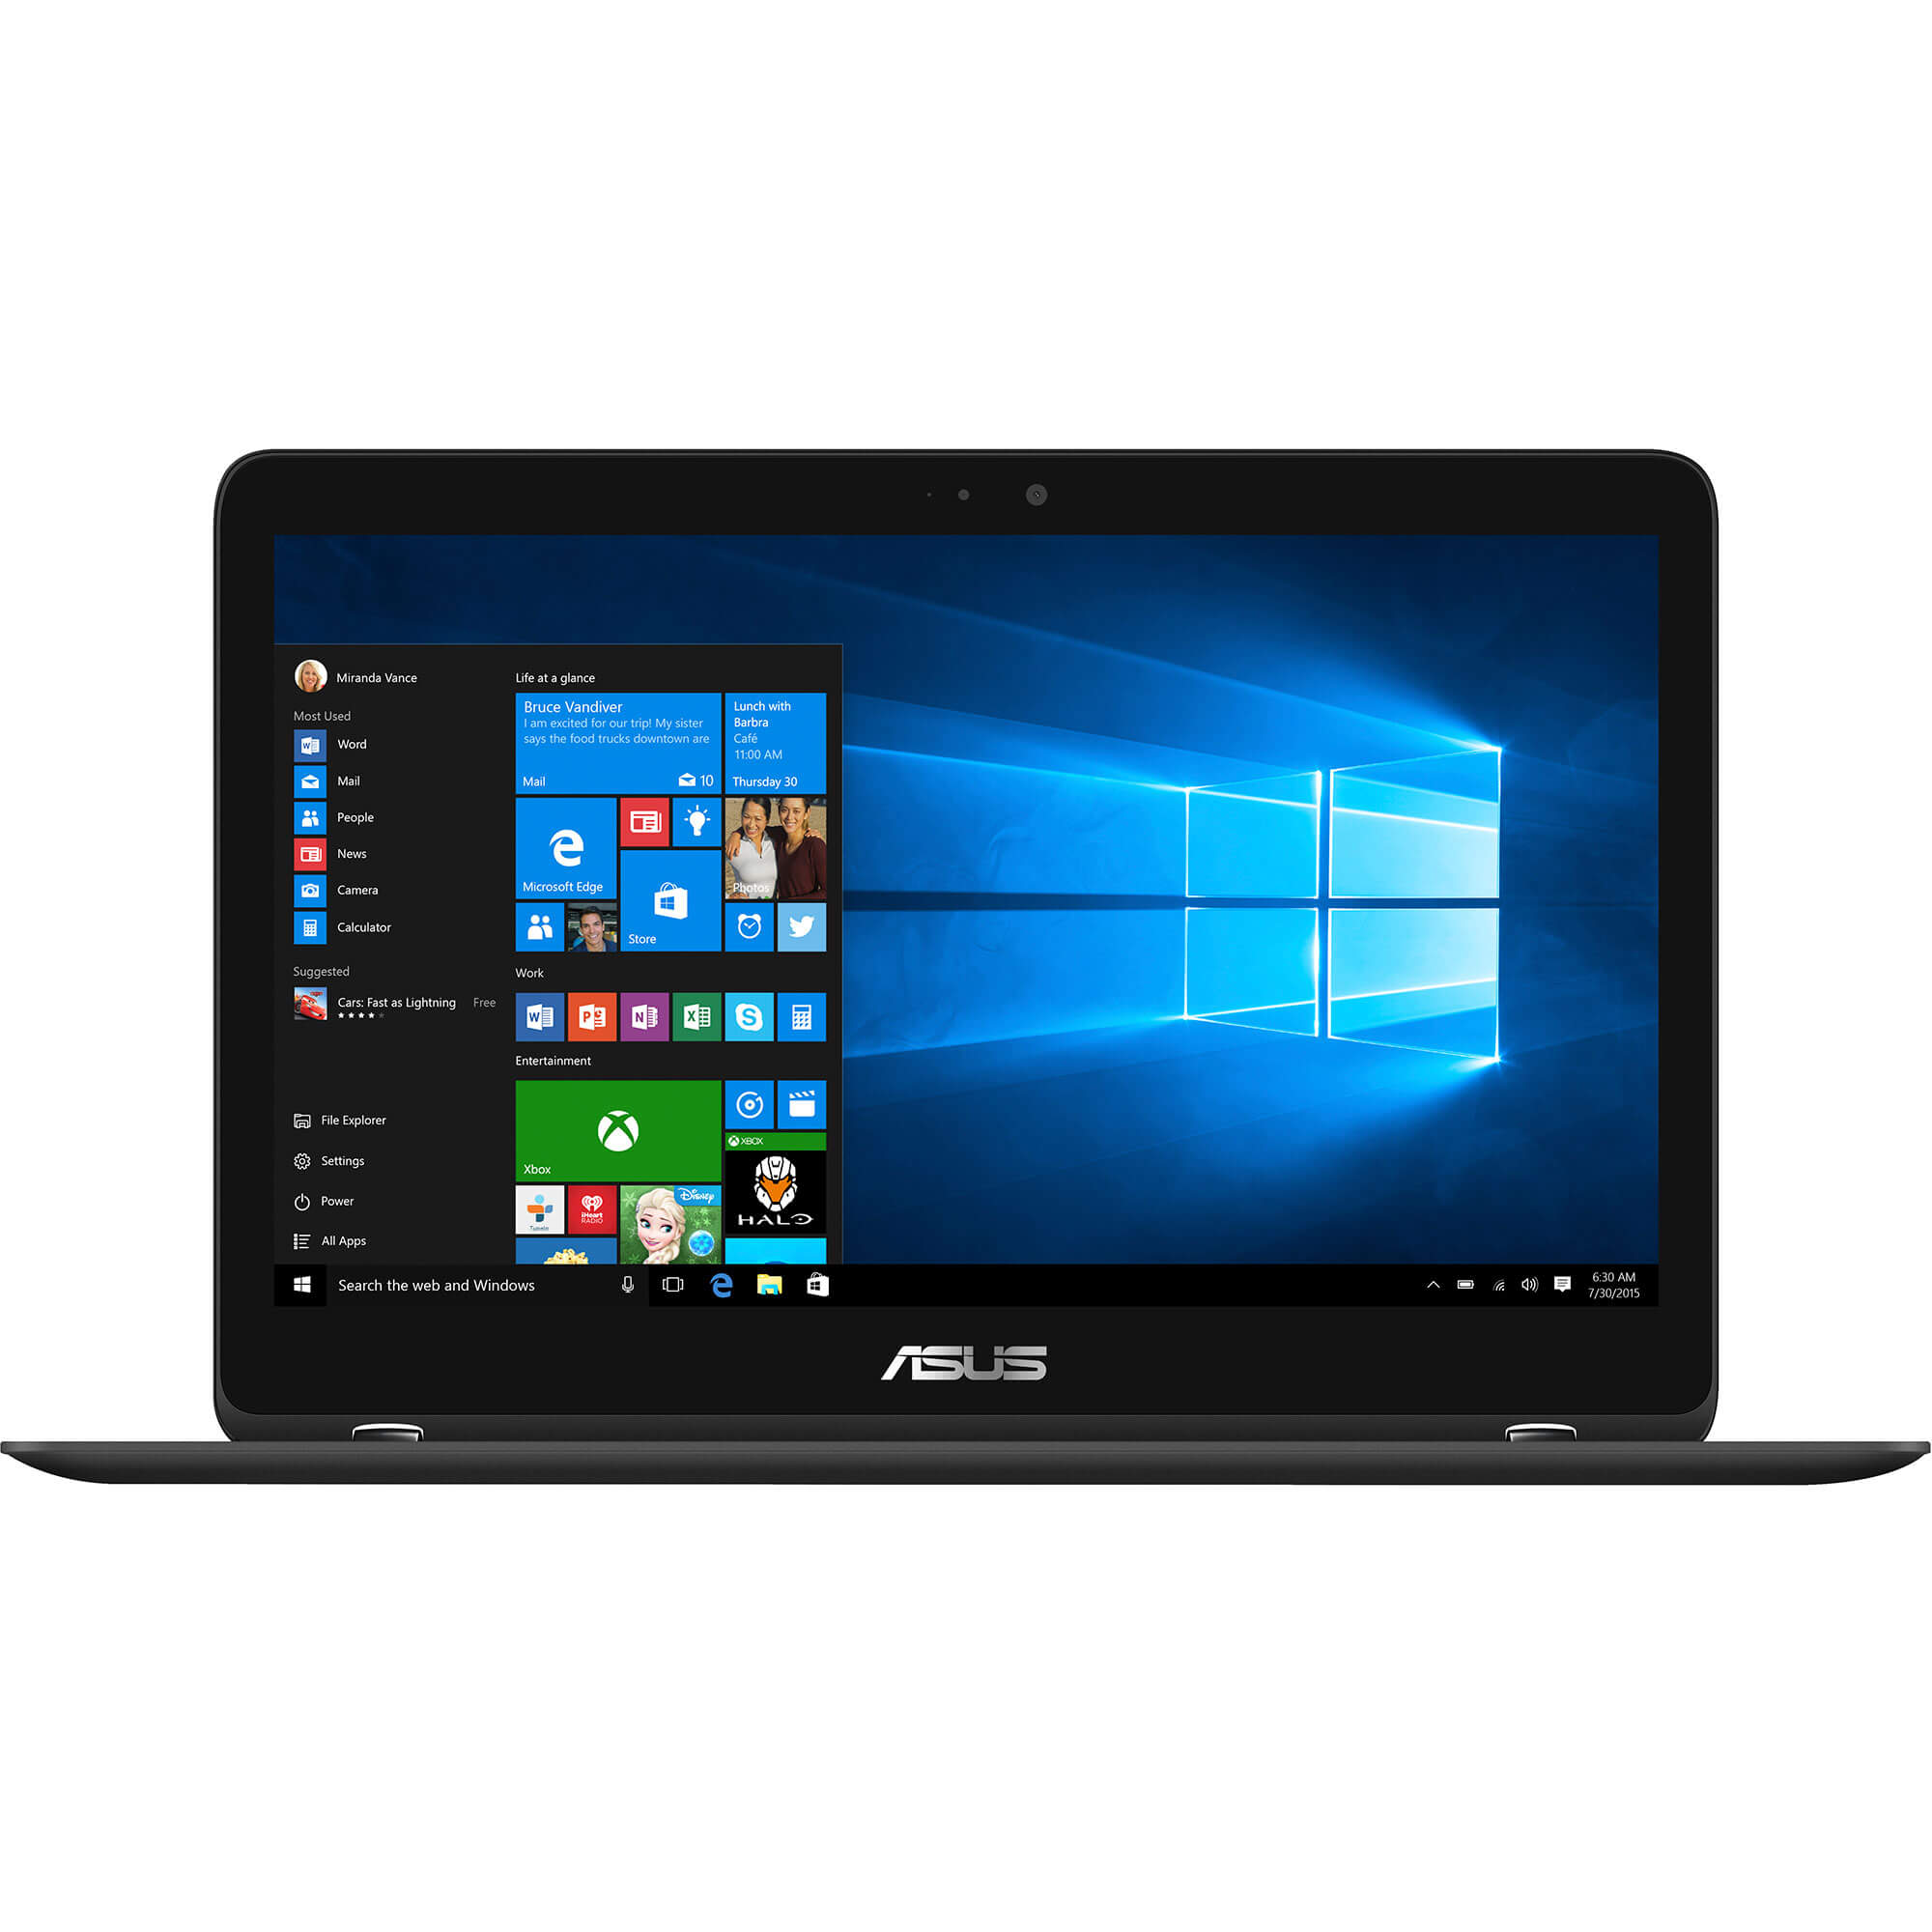  Laptop 2 in 1 Asus UX360UAK-C4232T, Intel Core i7-7500U, 8GB DDR3, SSD 256GB, Intel HD Graphics, Windows 10 